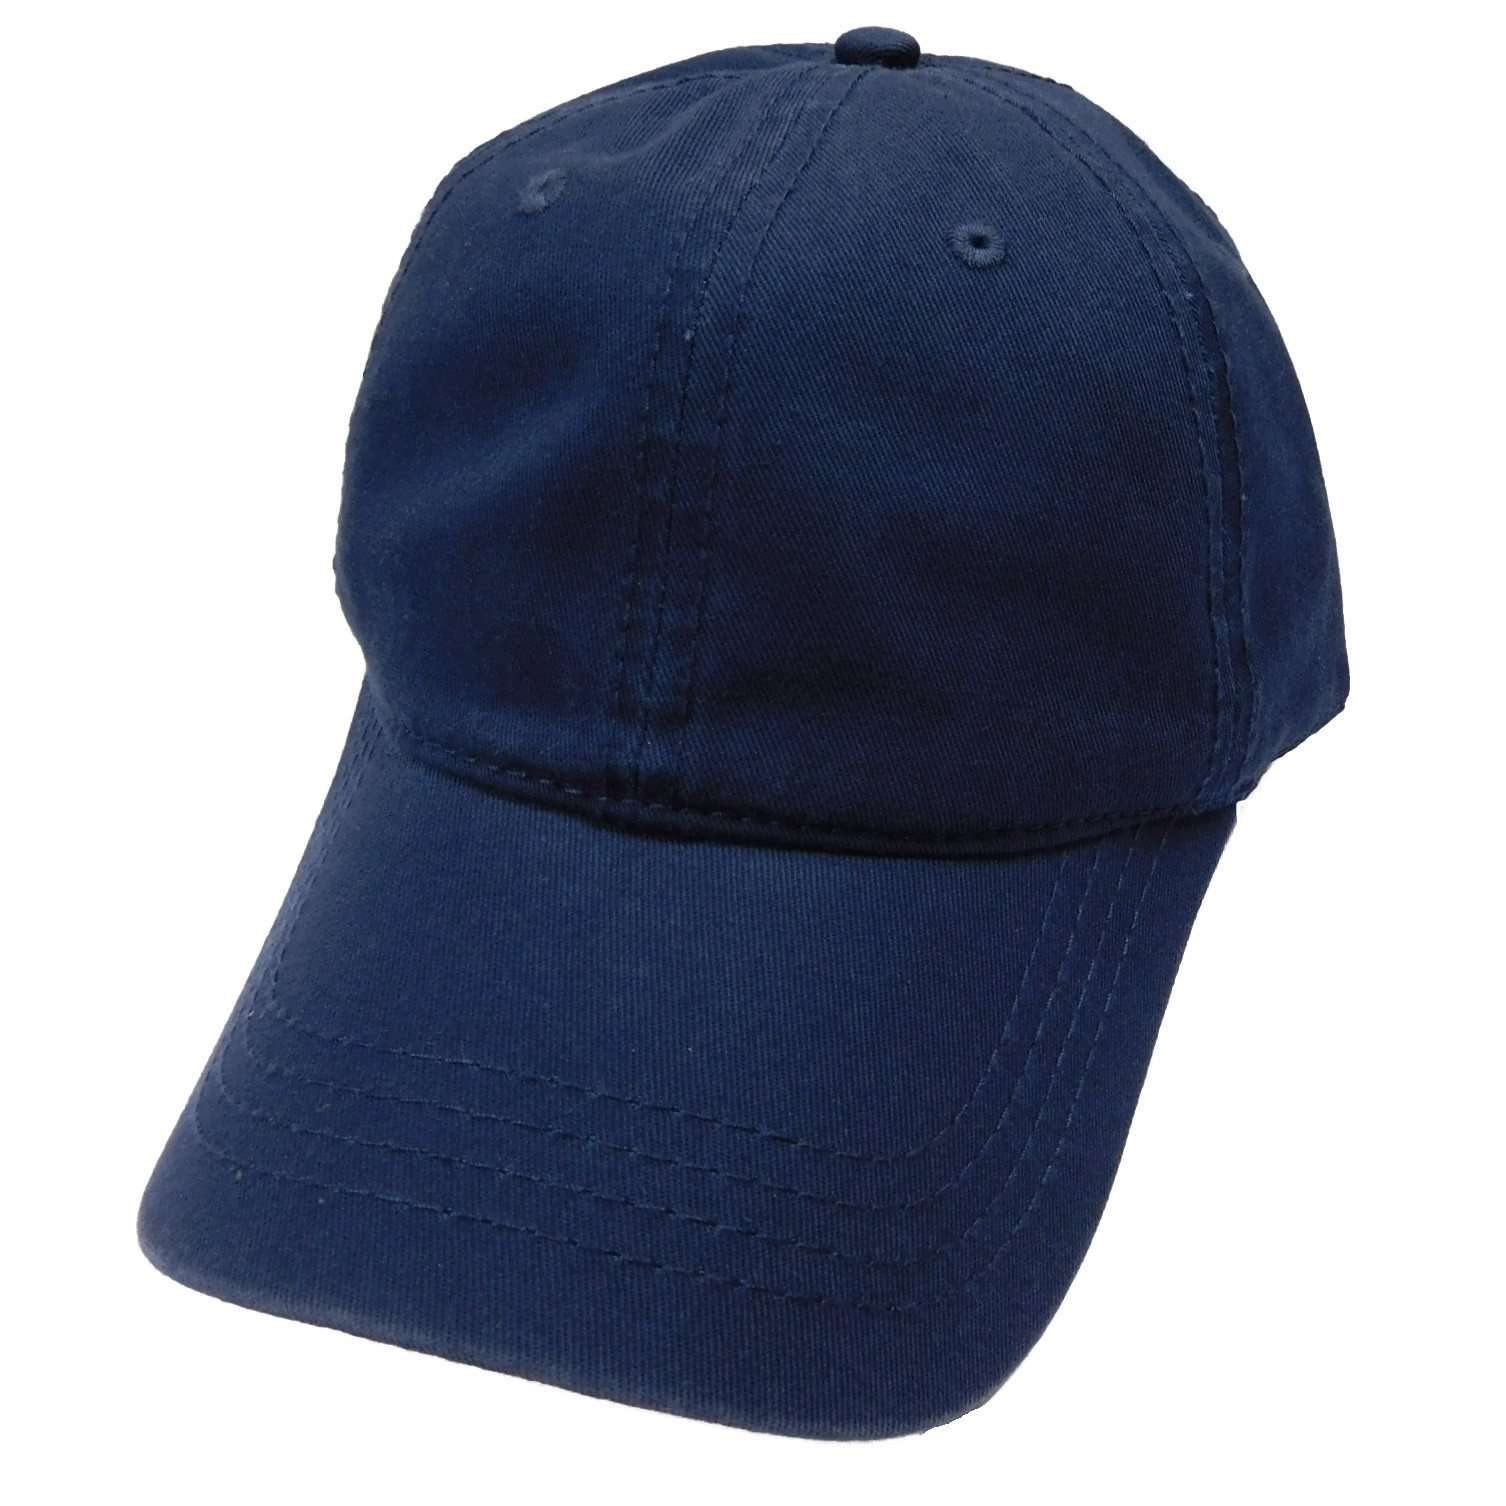 Washed Cotton Baseball Cap Cap Milani Hats wc001nv Navy  